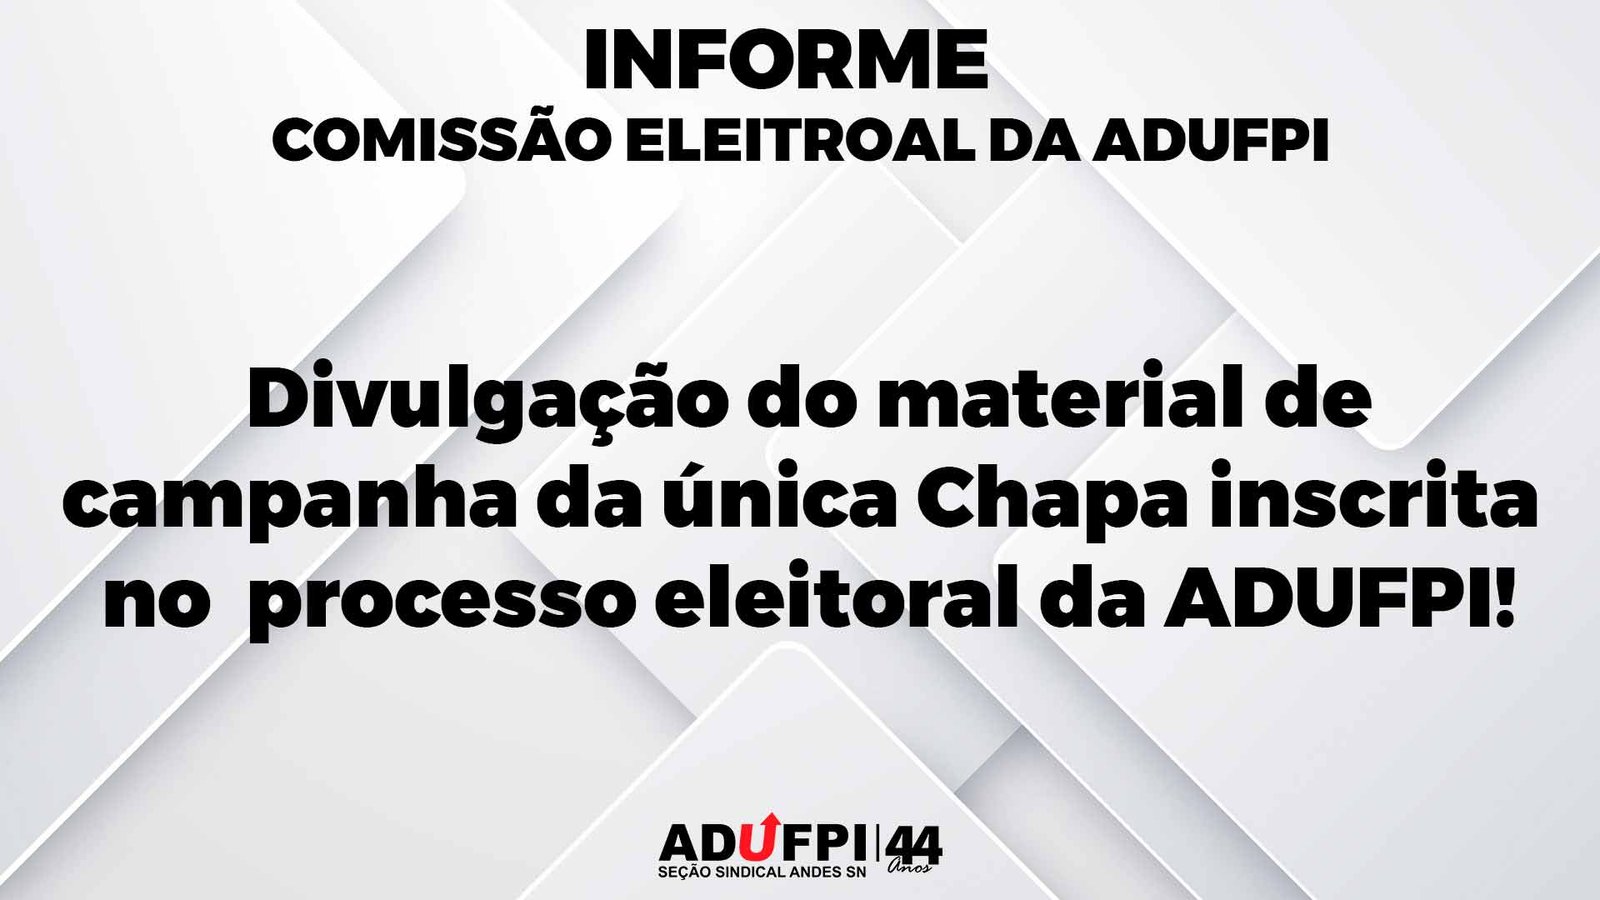 Comissão Eleitoral da ADUFPI: Divulgação do material de campanha da única Chapa inscrita no processo eleitoral da ADUFPI!